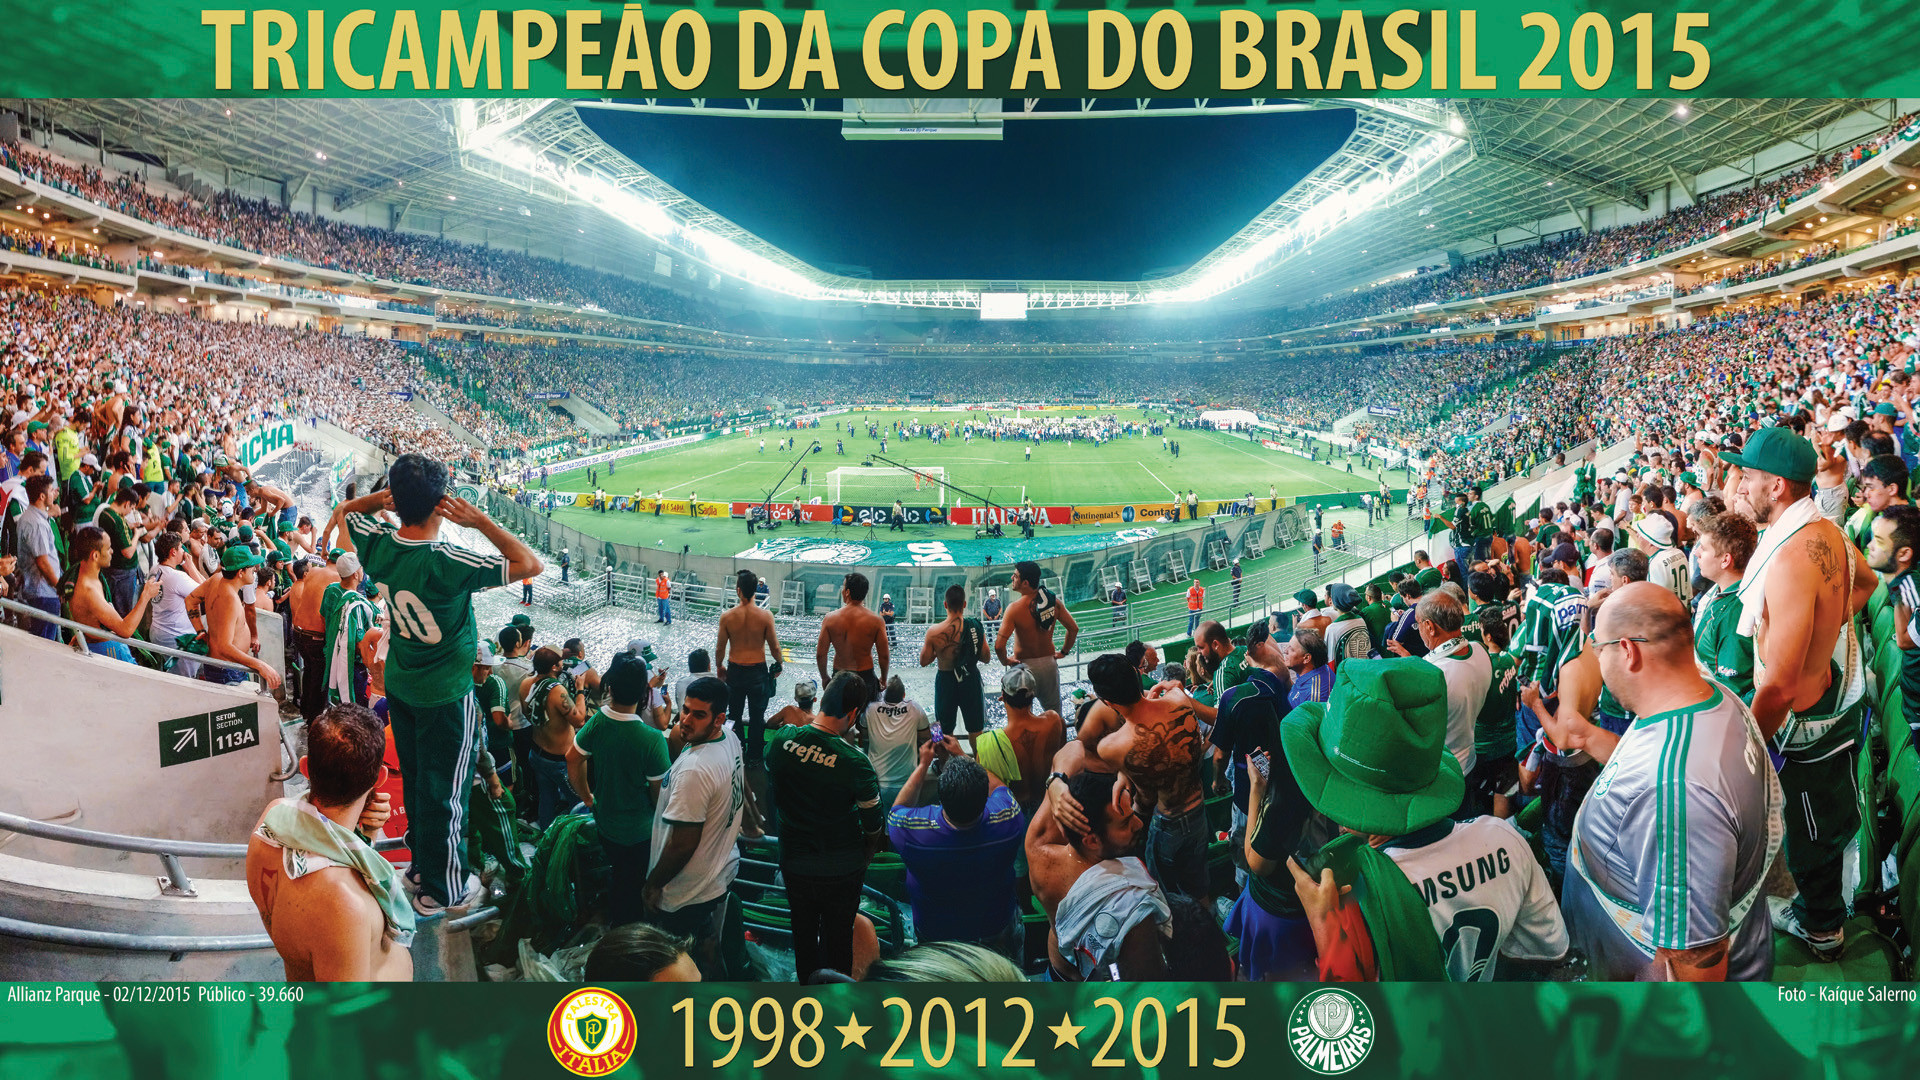 1920x1080 Panico747 5 1 Poster Palmeiras Tricampeao da Copa do Brasil 2015 by  Panico747